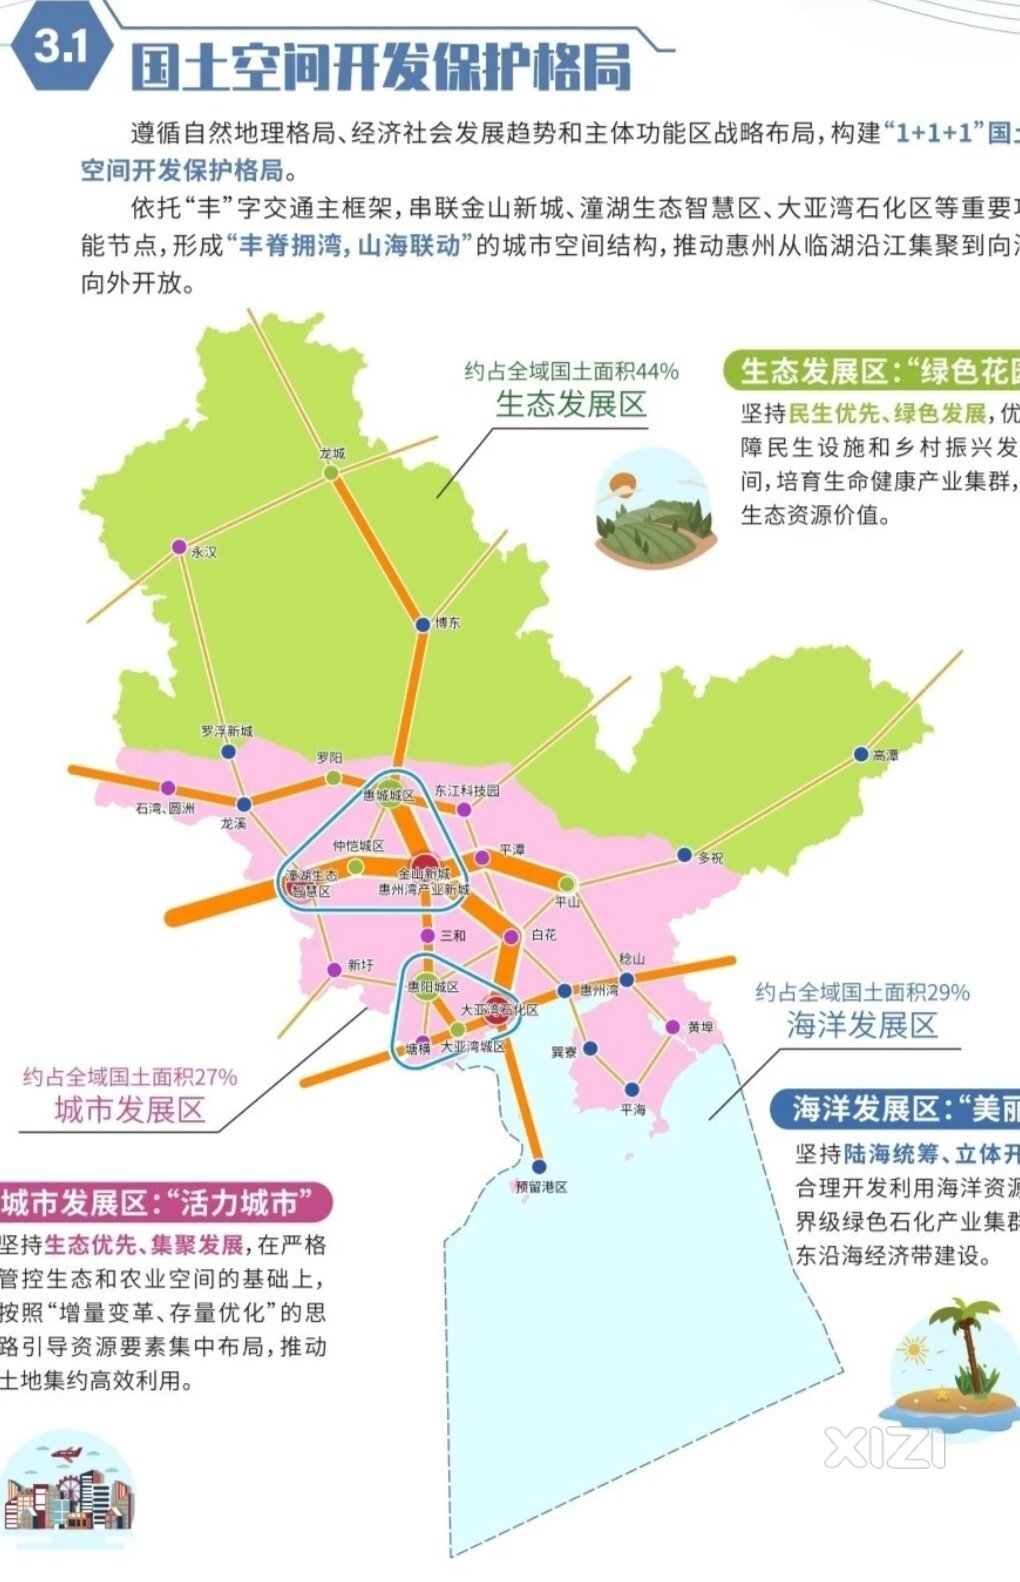 惠州发布国土最新规划:惠东那么多地区纳入城市发展区哦。